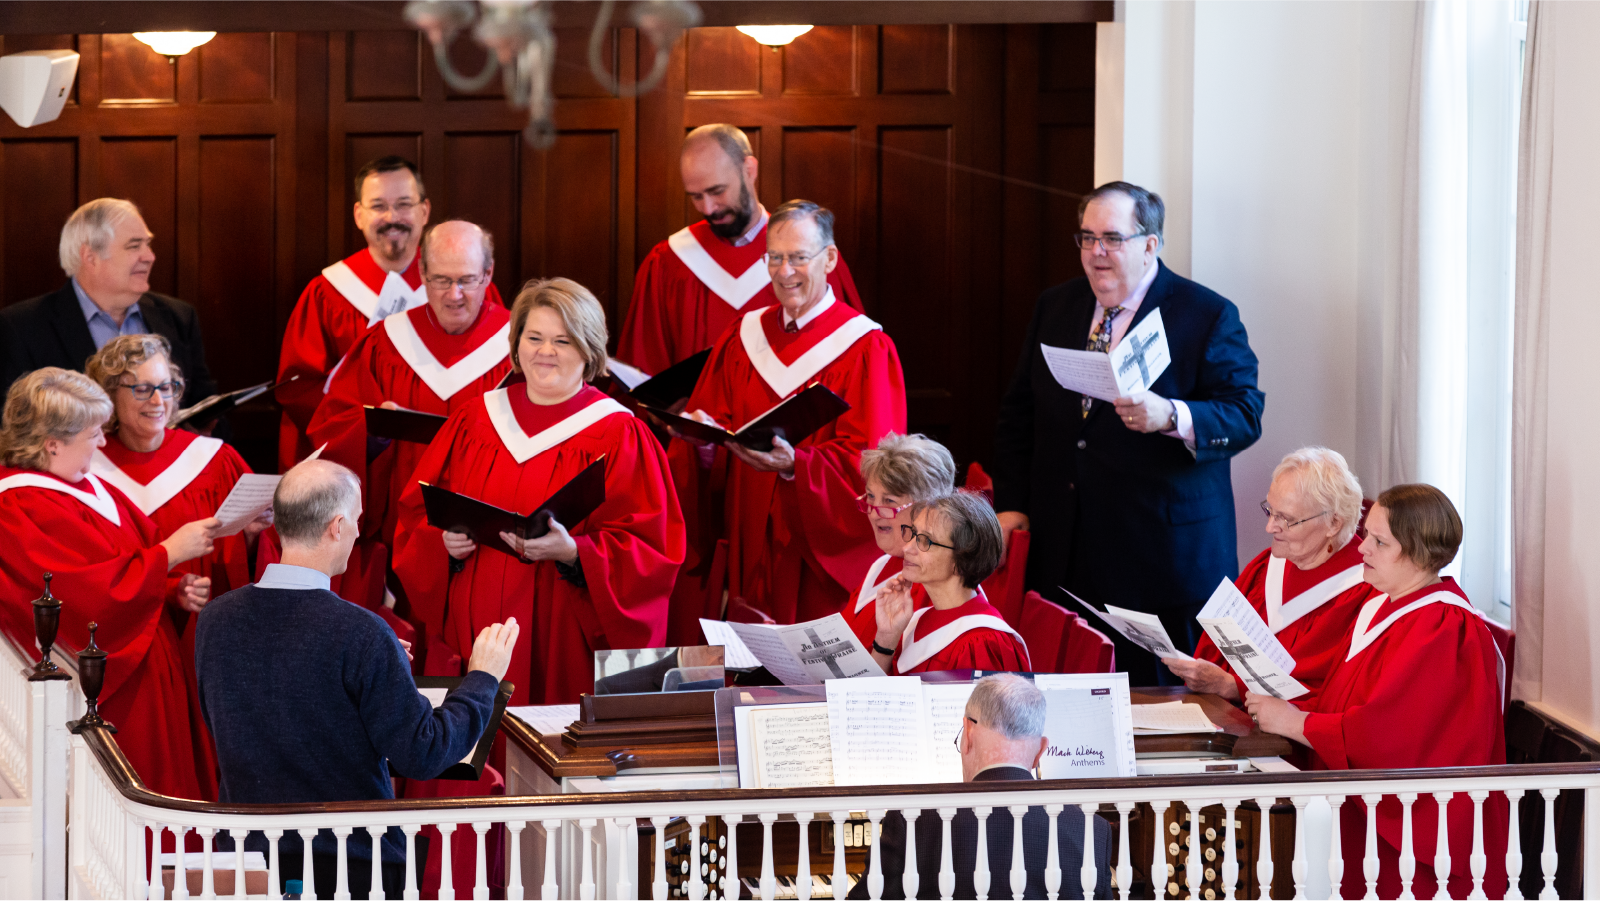 Choir singing in robes